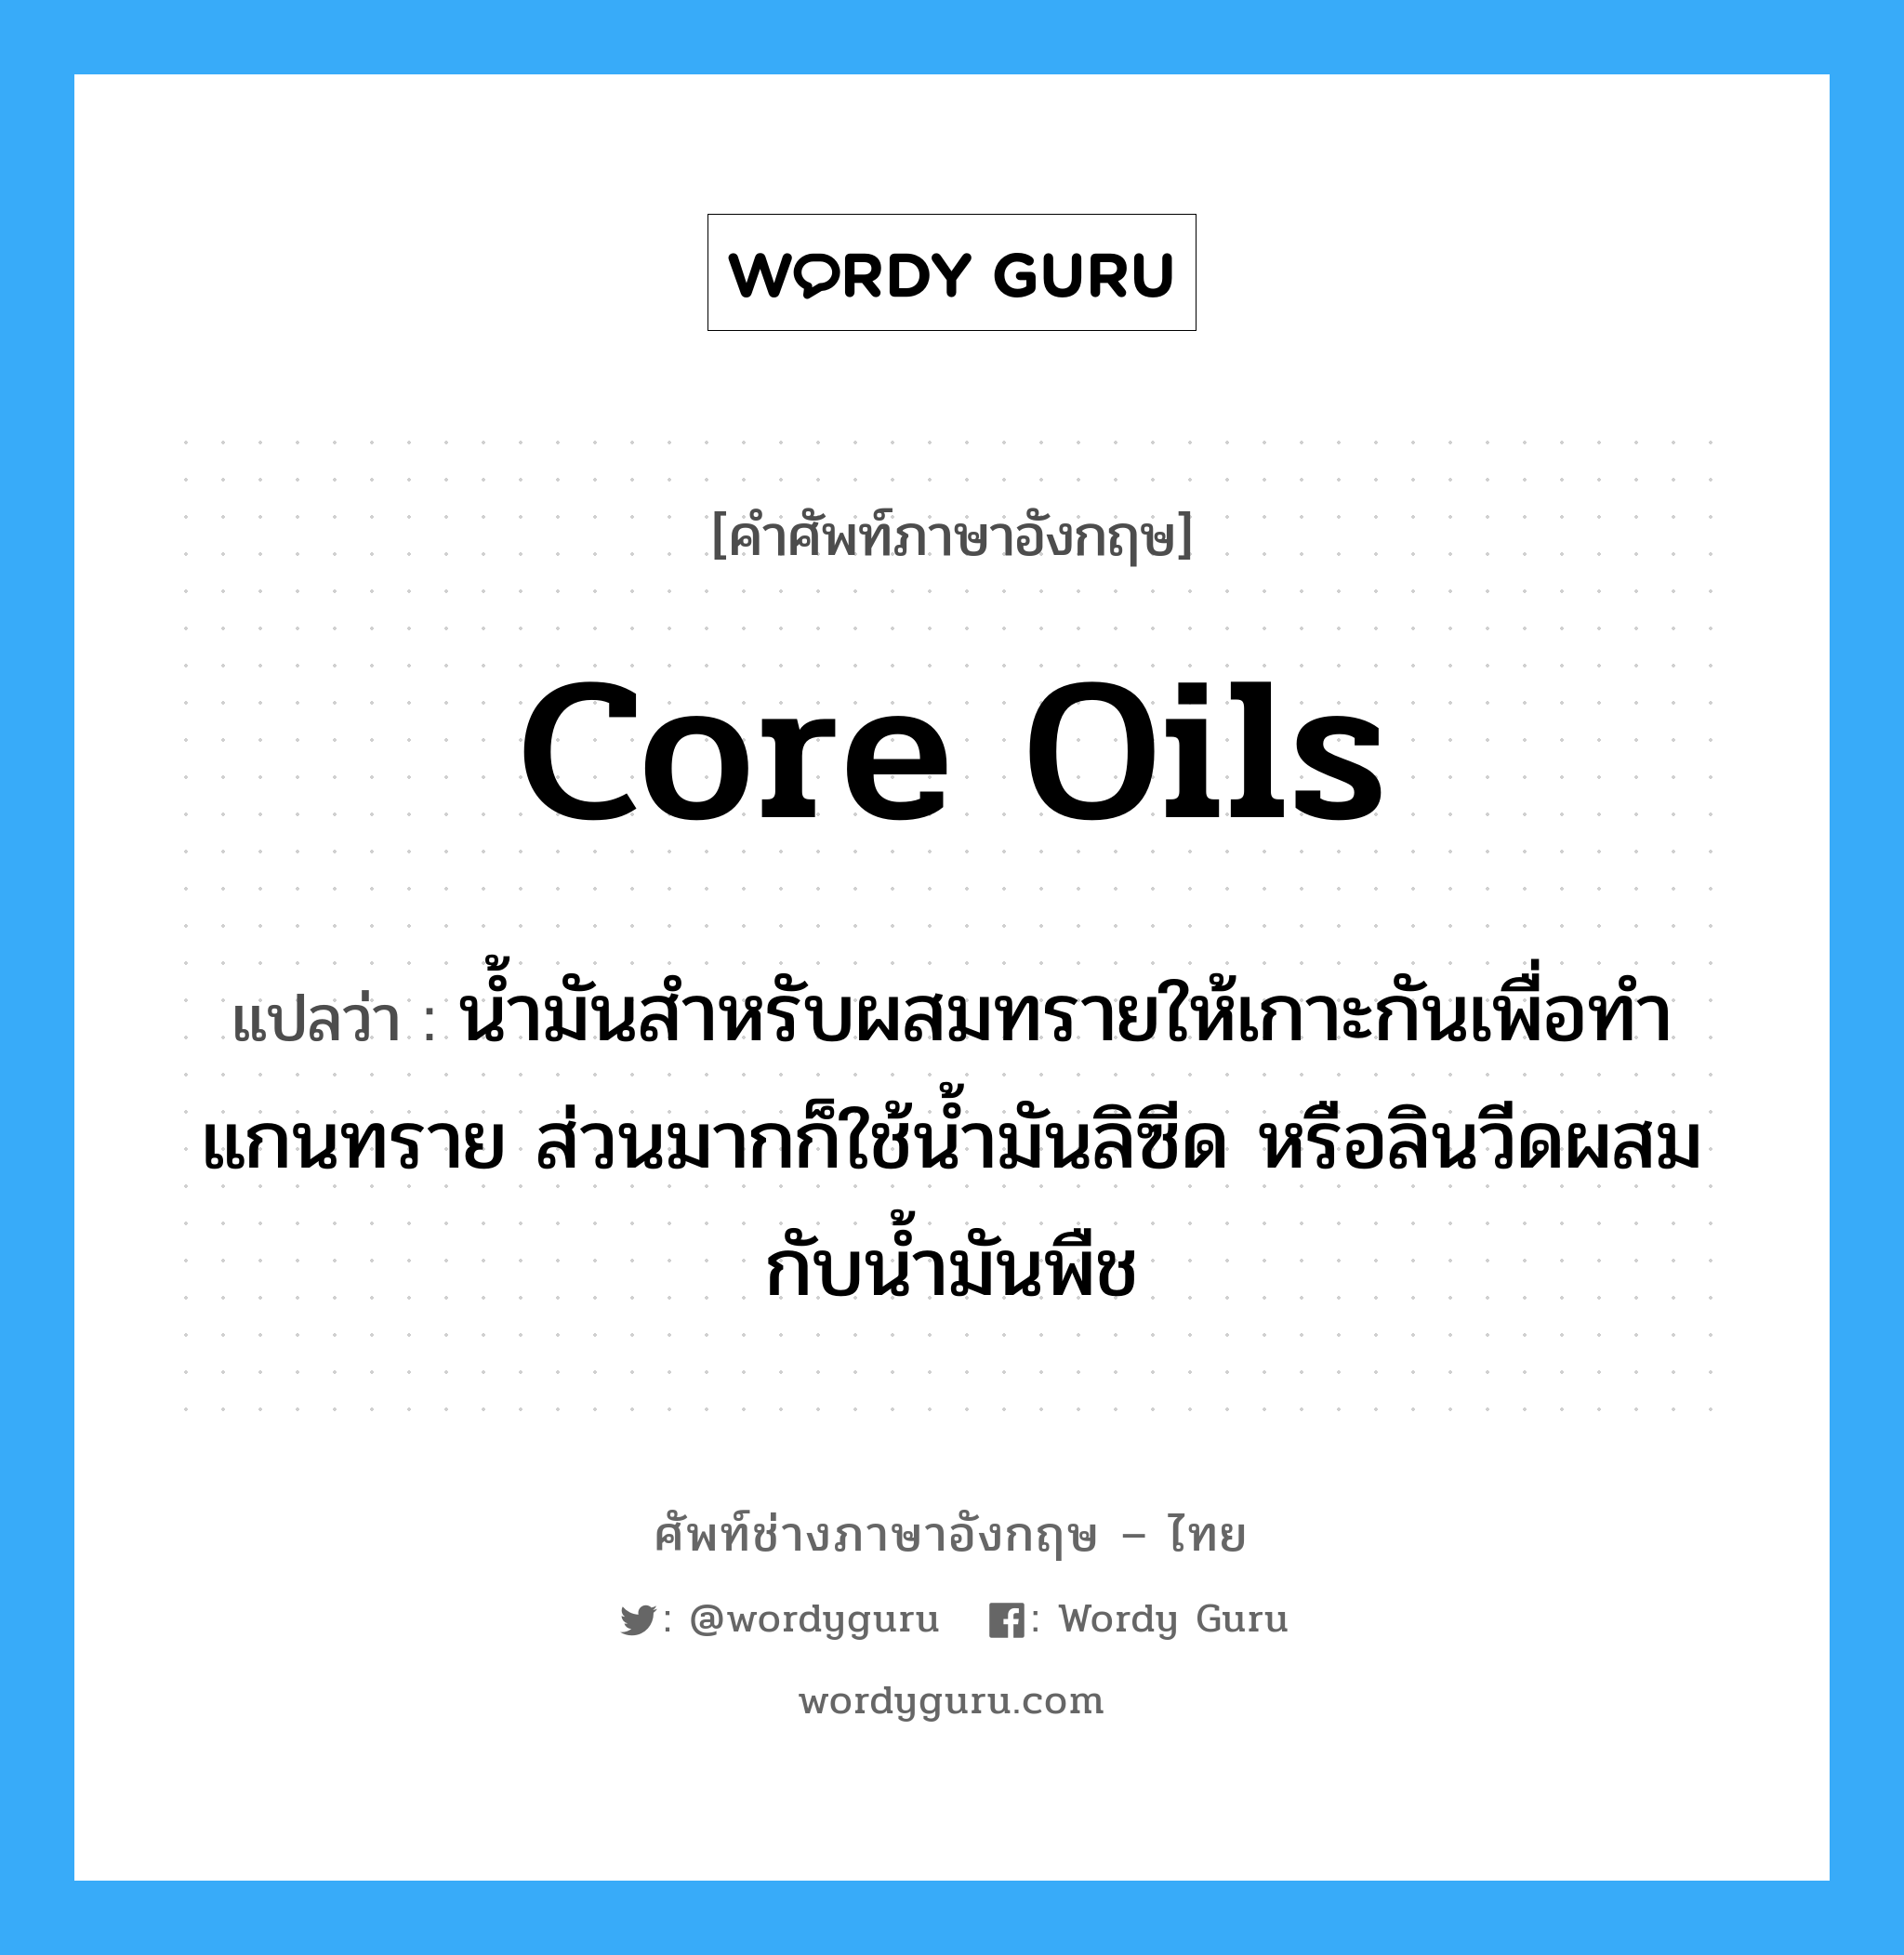 core oils แปลว่า?, คำศัพท์ช่างภาษาอังกฤษ - ไทย core oils คำศัพท์ภาษาอังกฤษ core oils แปลว่า น้ำมันสำหรับผสมทรายให้เกาะกันเพื่อทำแกนทราย ส่วนมากก็ใช้น้ำมันลิซีด หรือลินวีดผสมกับน้ำมันพืช